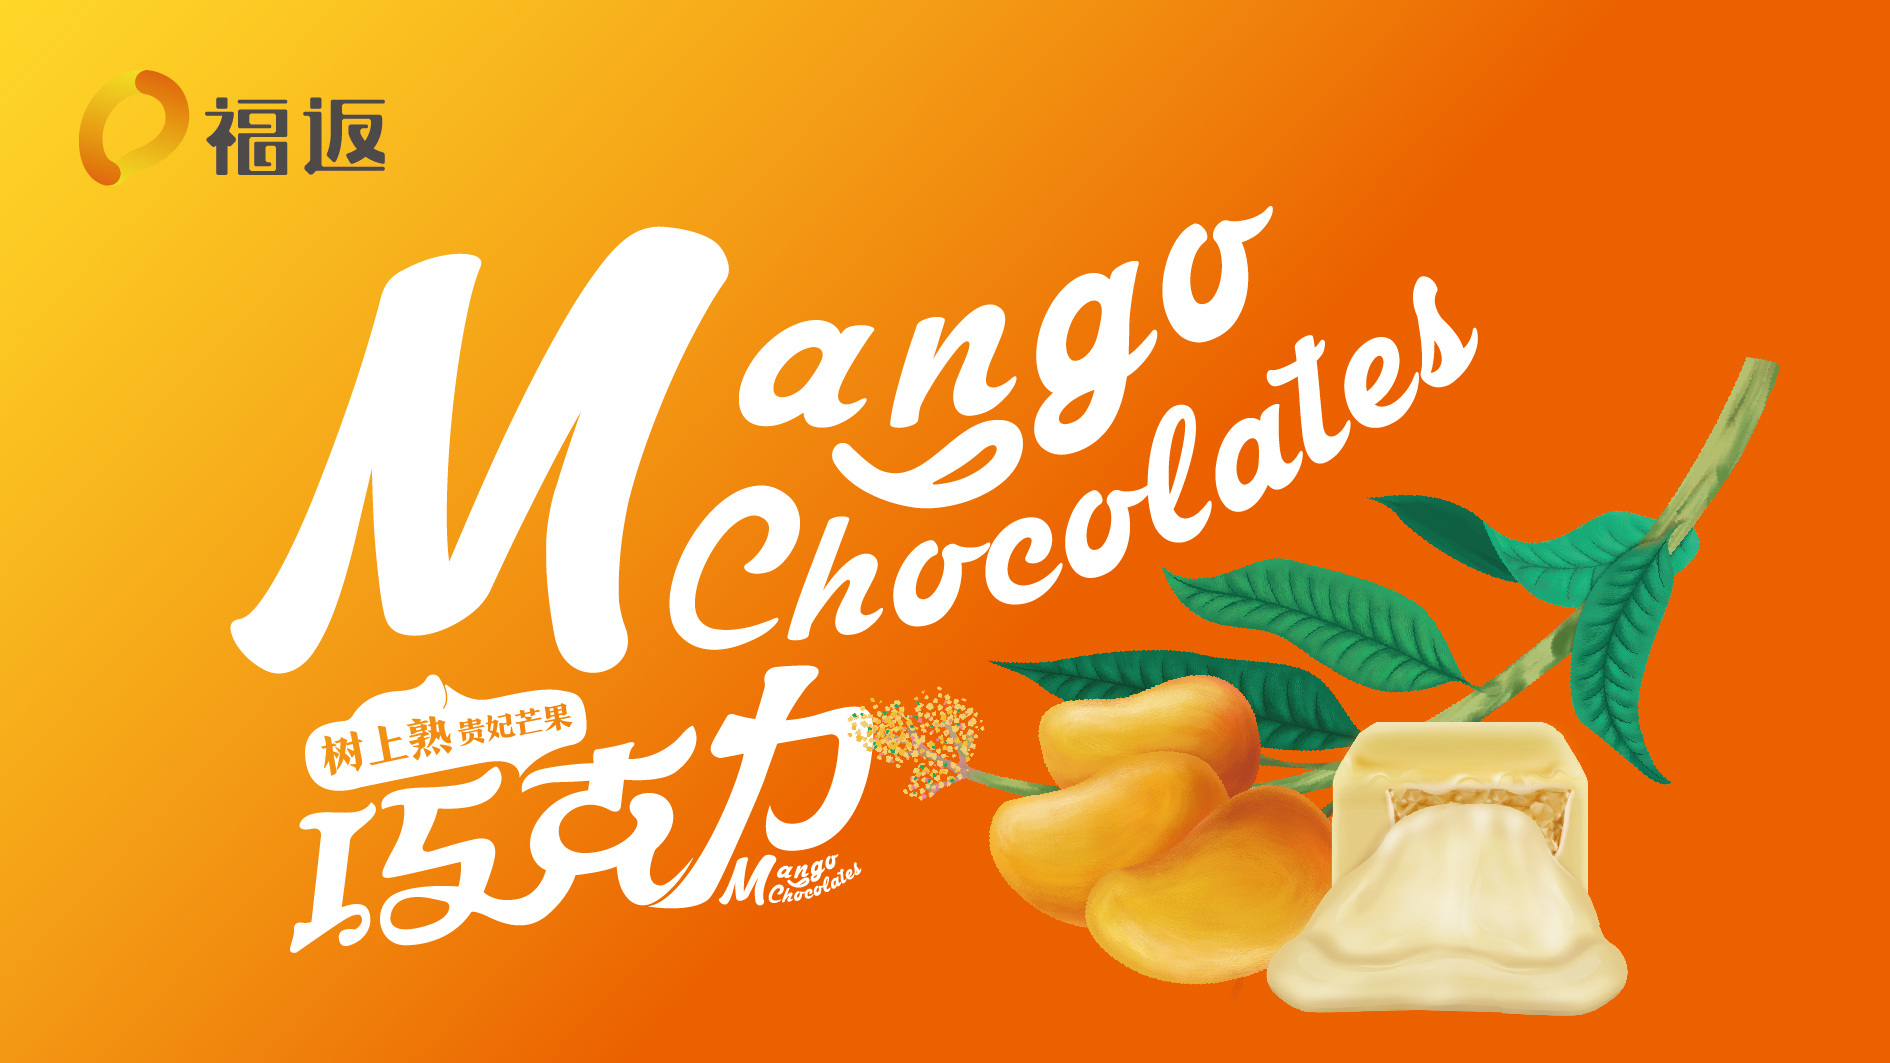 海南福返芒果巧克力品牌形象设计